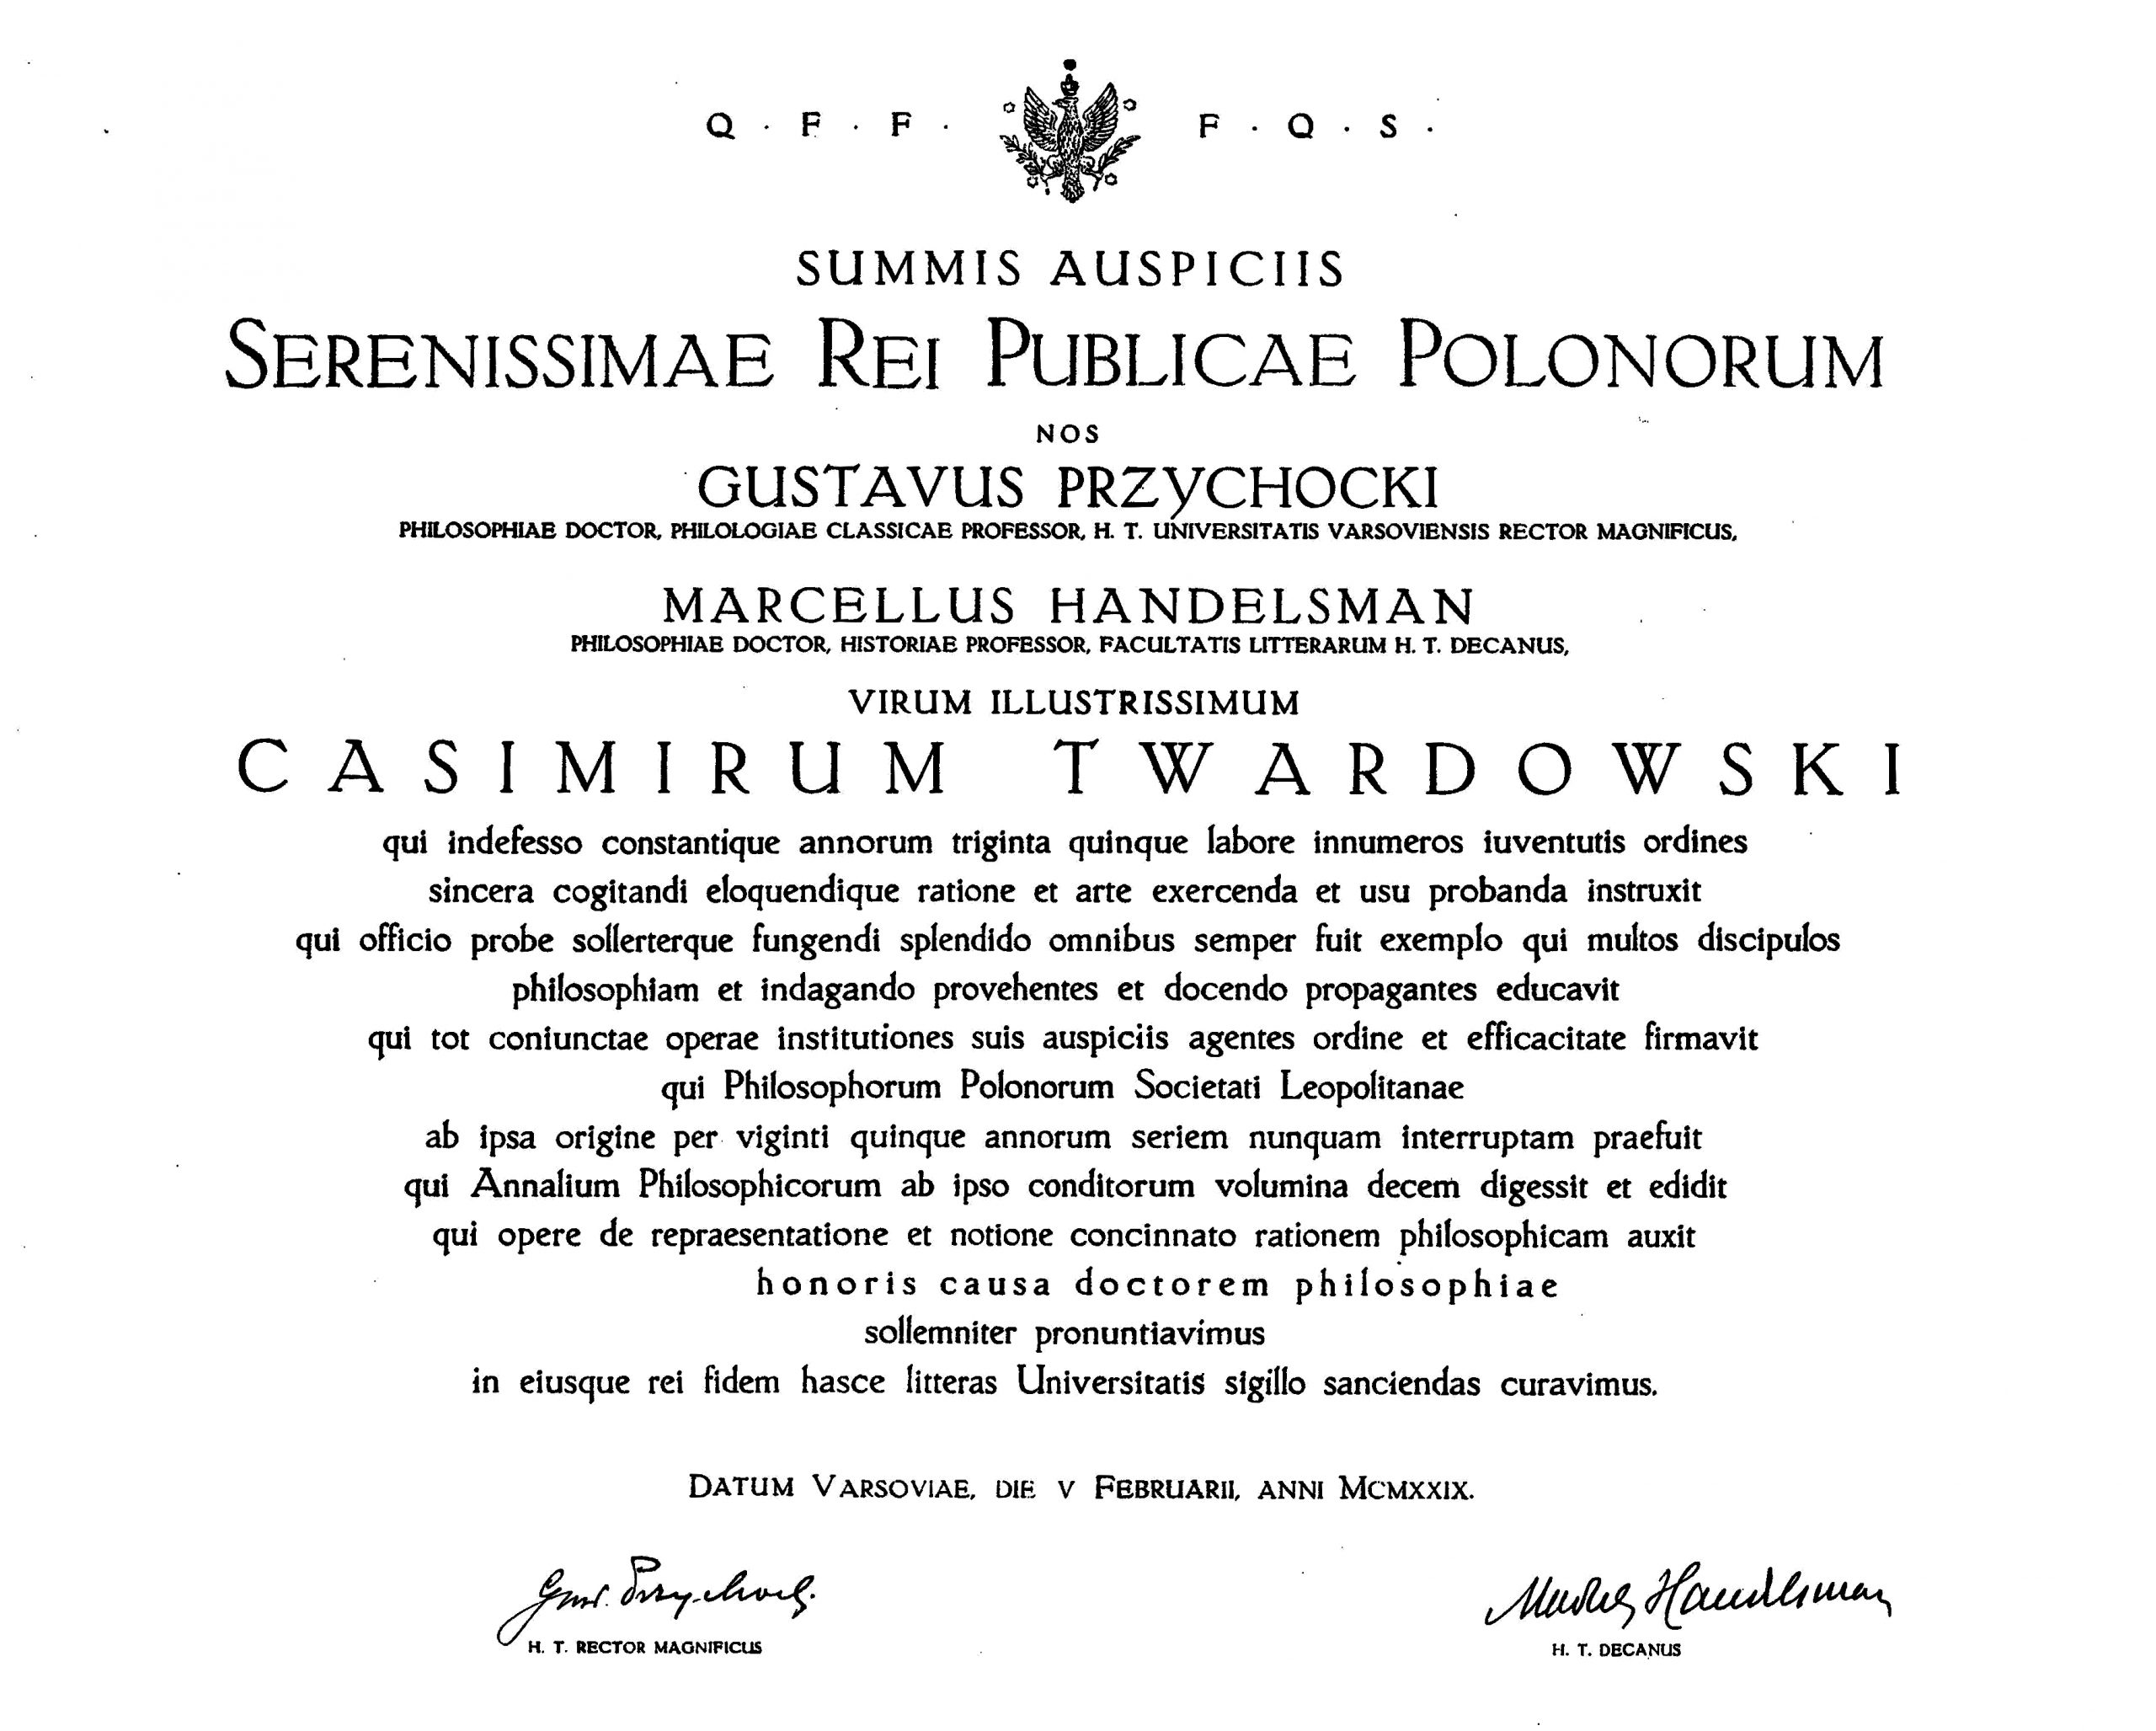 Dyplom nadania doktoratu honoris causa Uniwersytetu Warszawskiego (1929)